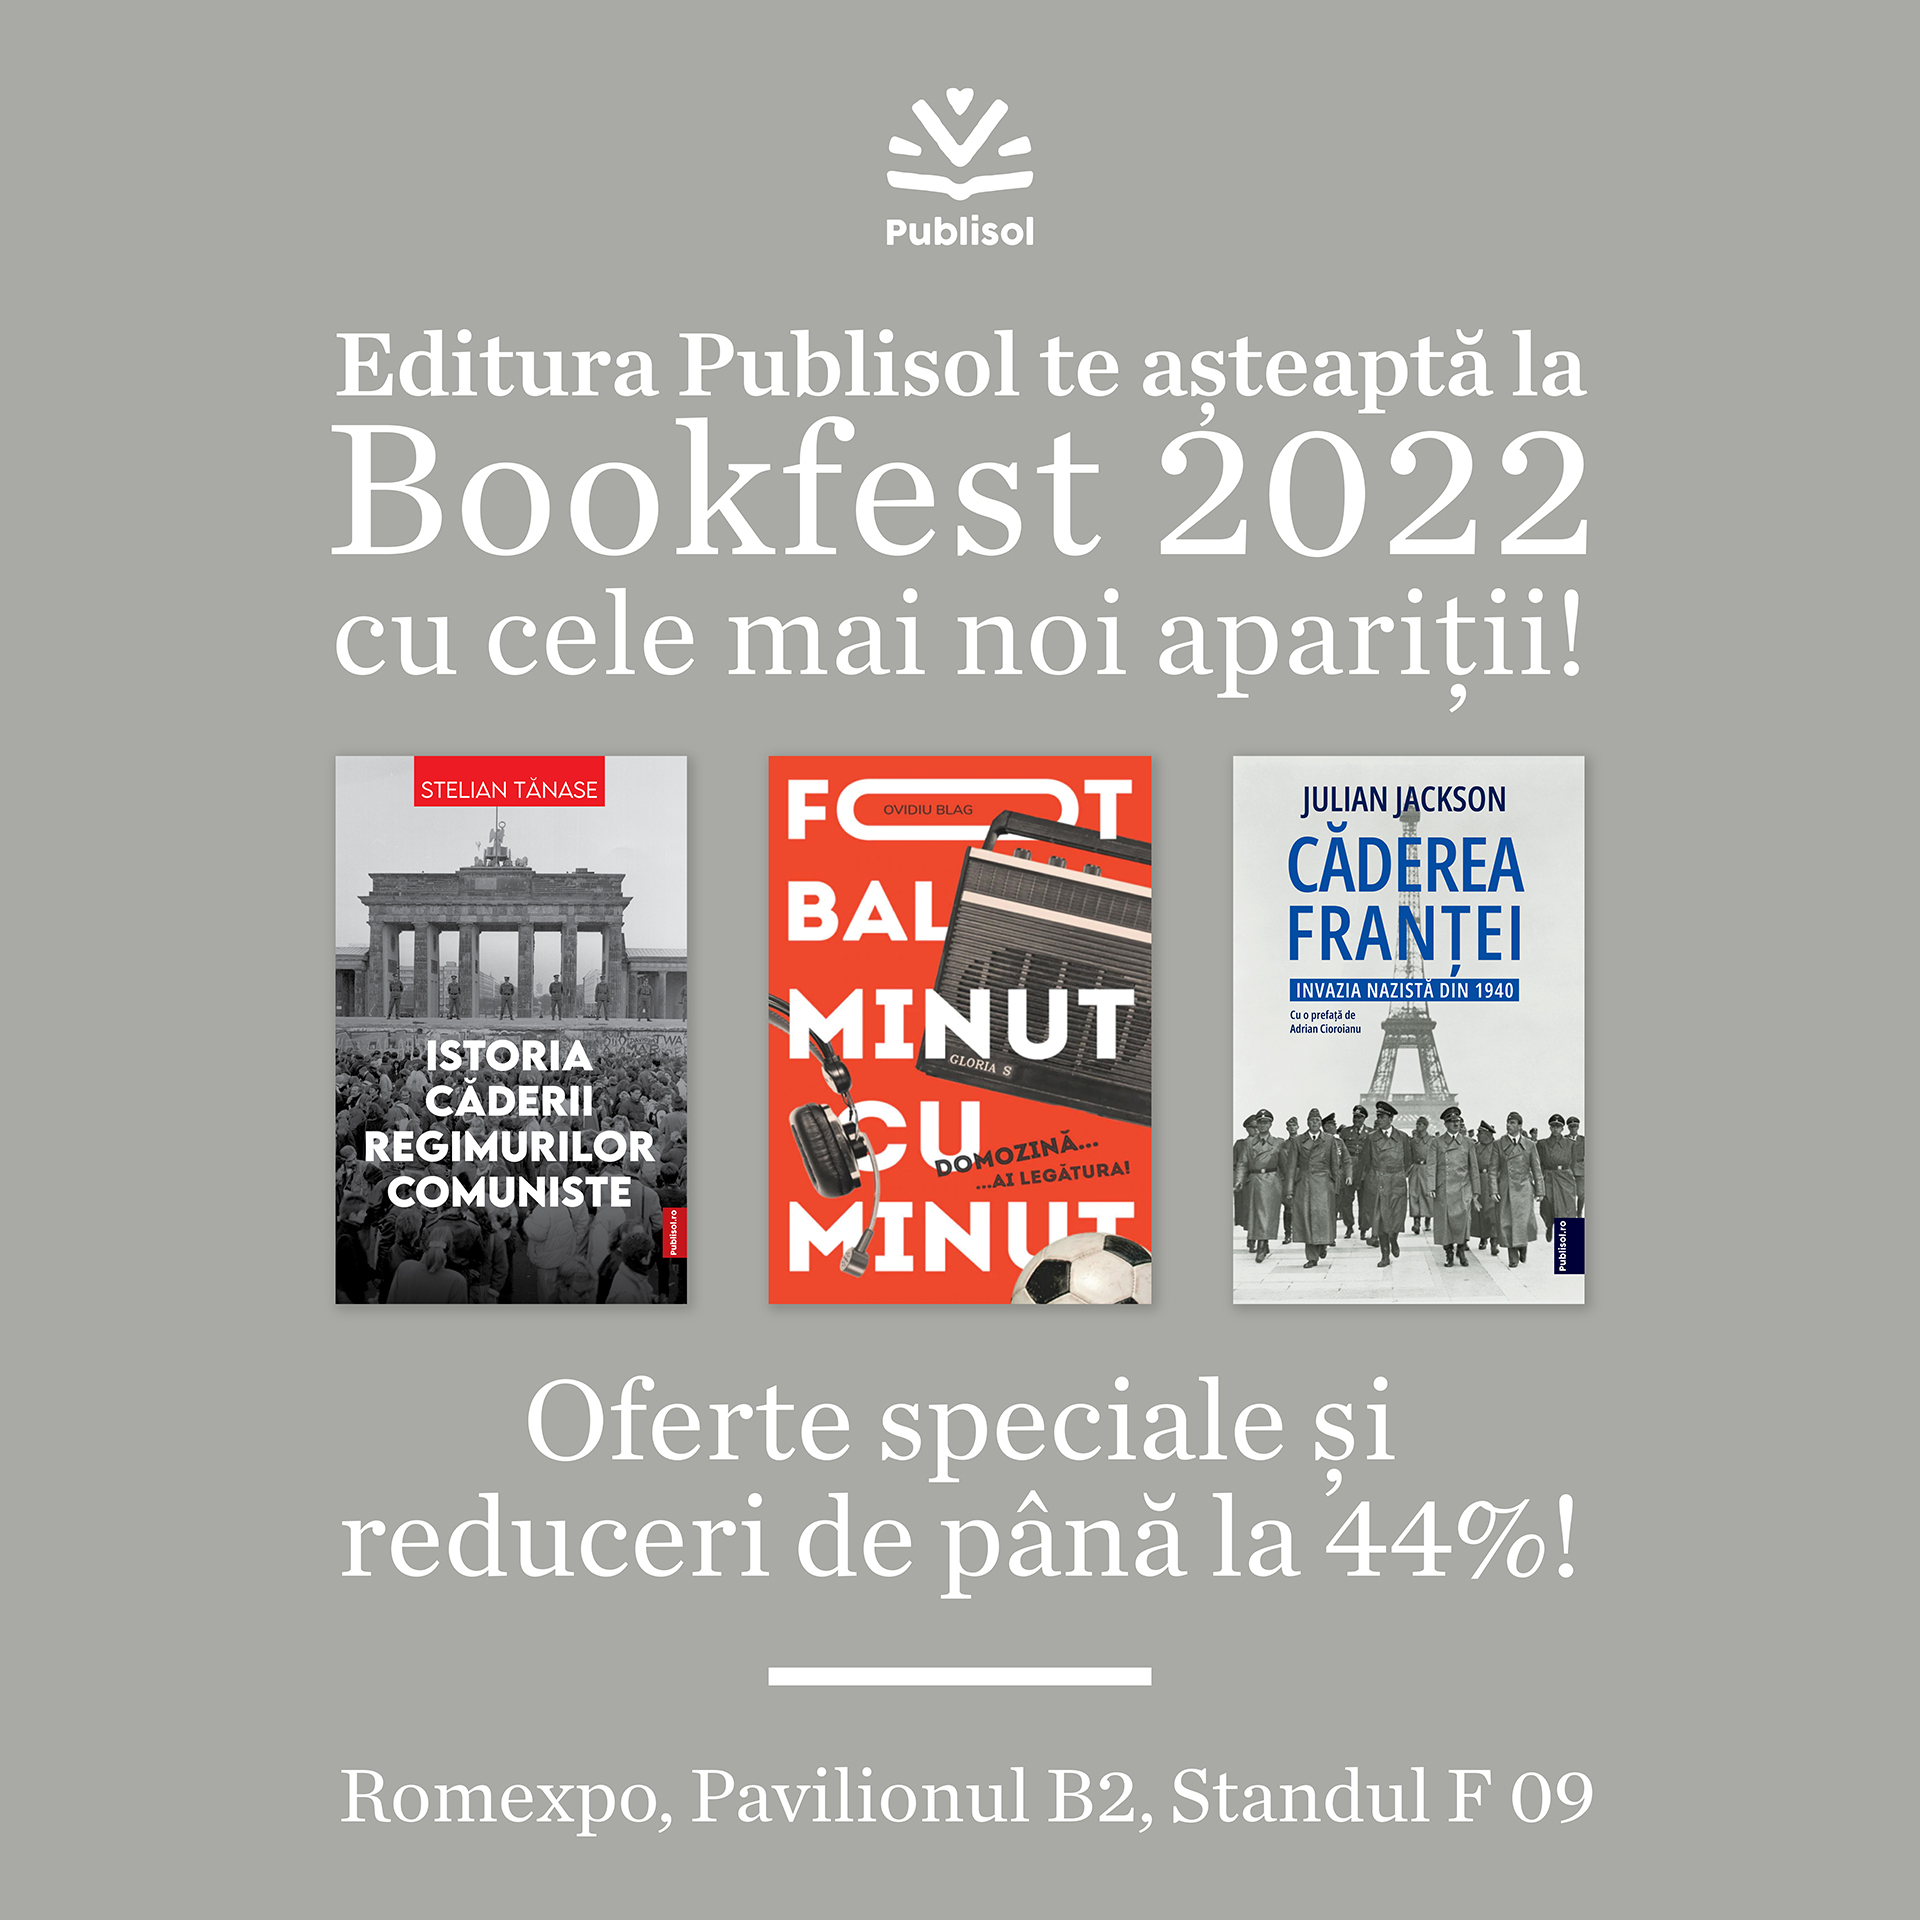 Comunicat de presă – Bookfest: Oferte și prețuri cu totul speciale la Editura Publisol!